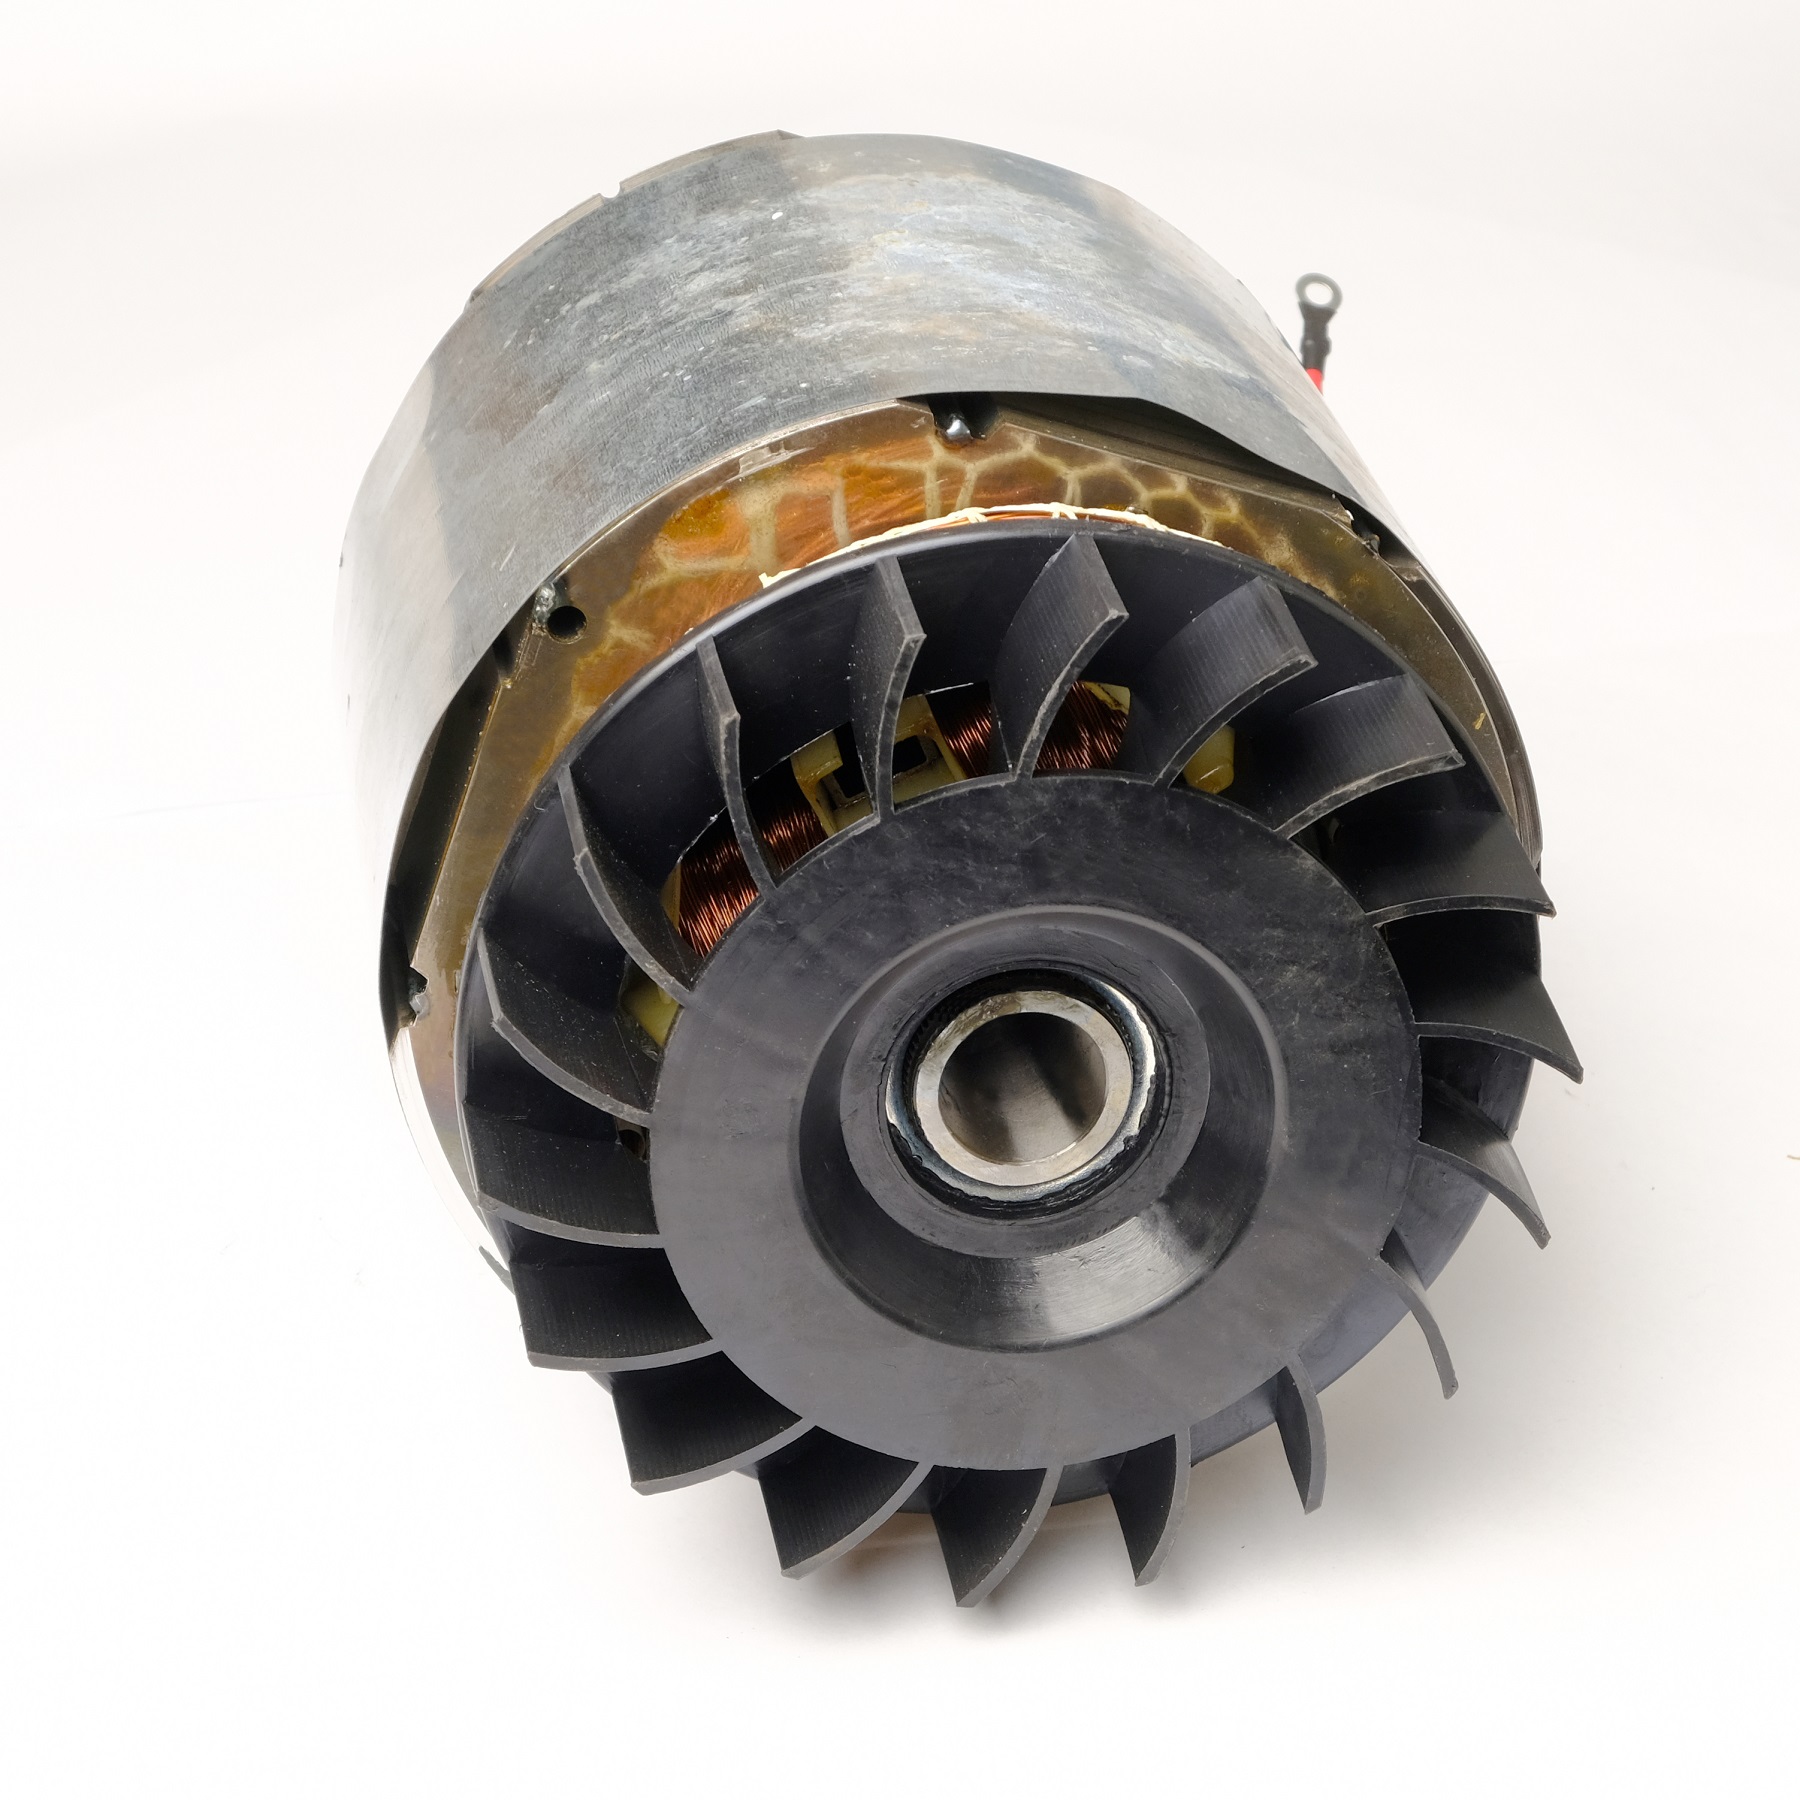 Spule 13 PS Motor Generator Stator Rotor 1 Phase hinten